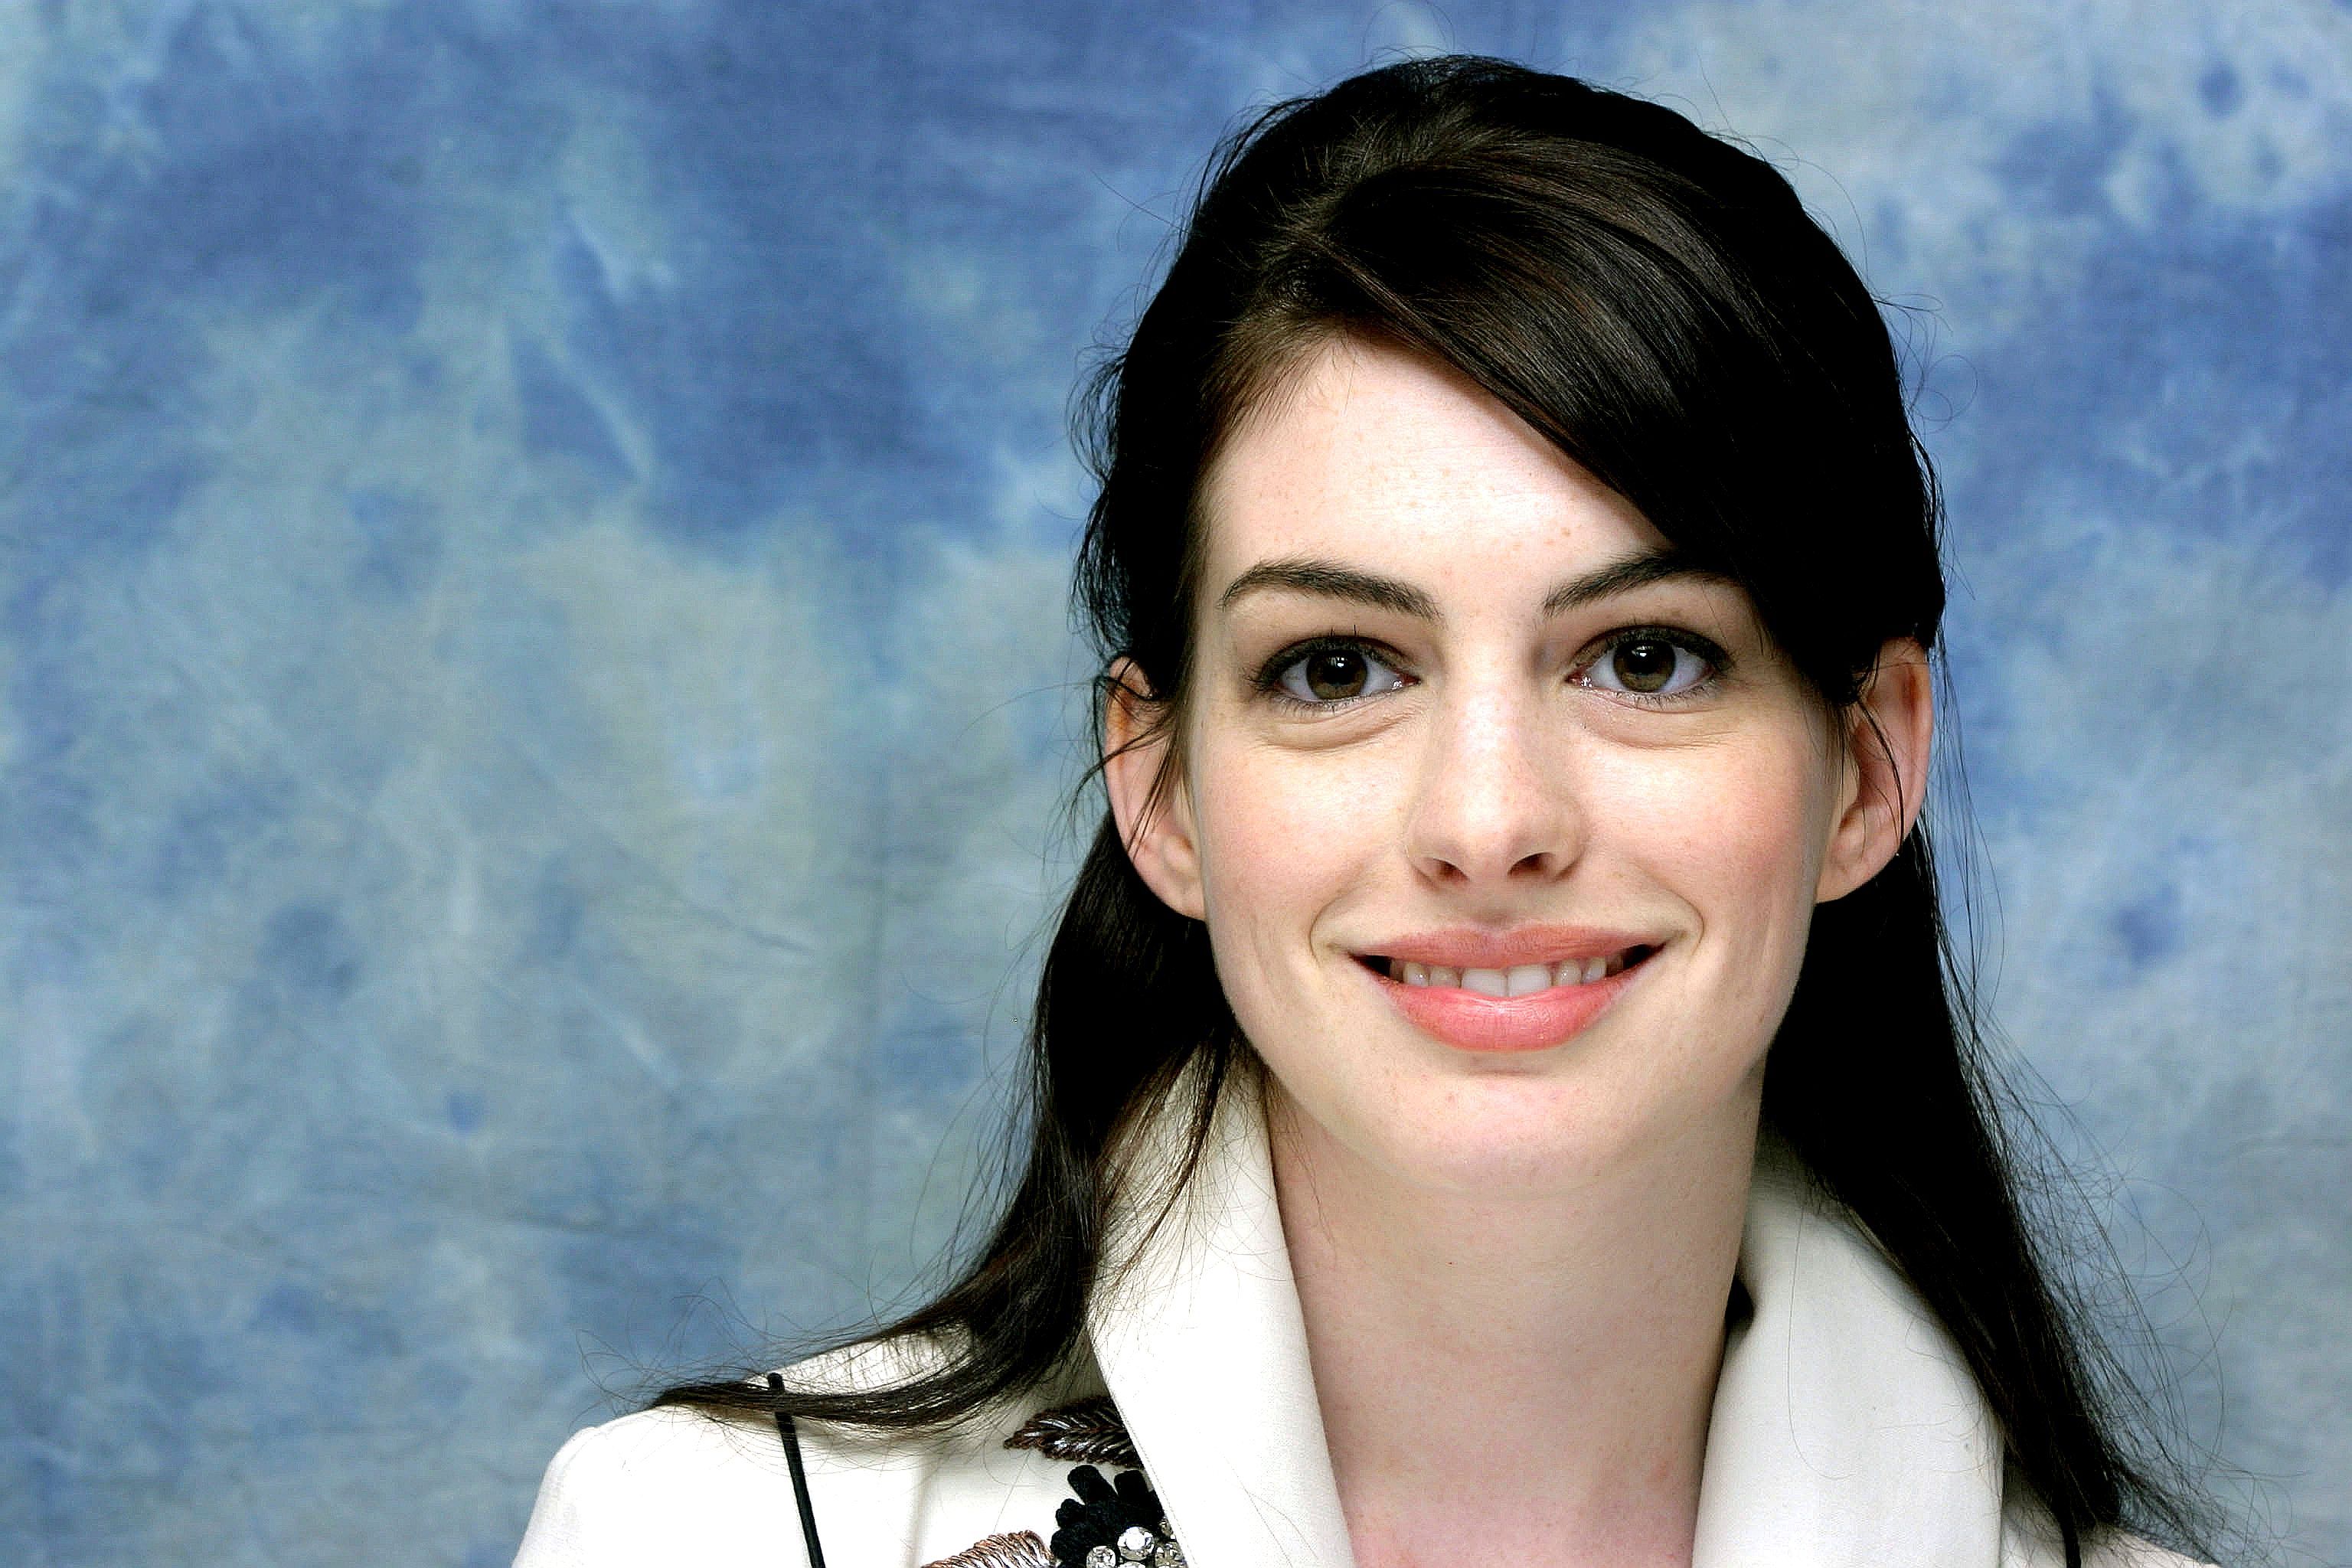 VIDEO: Se filtran fotos de Anne Hathaway desnuda - Noticias Ya